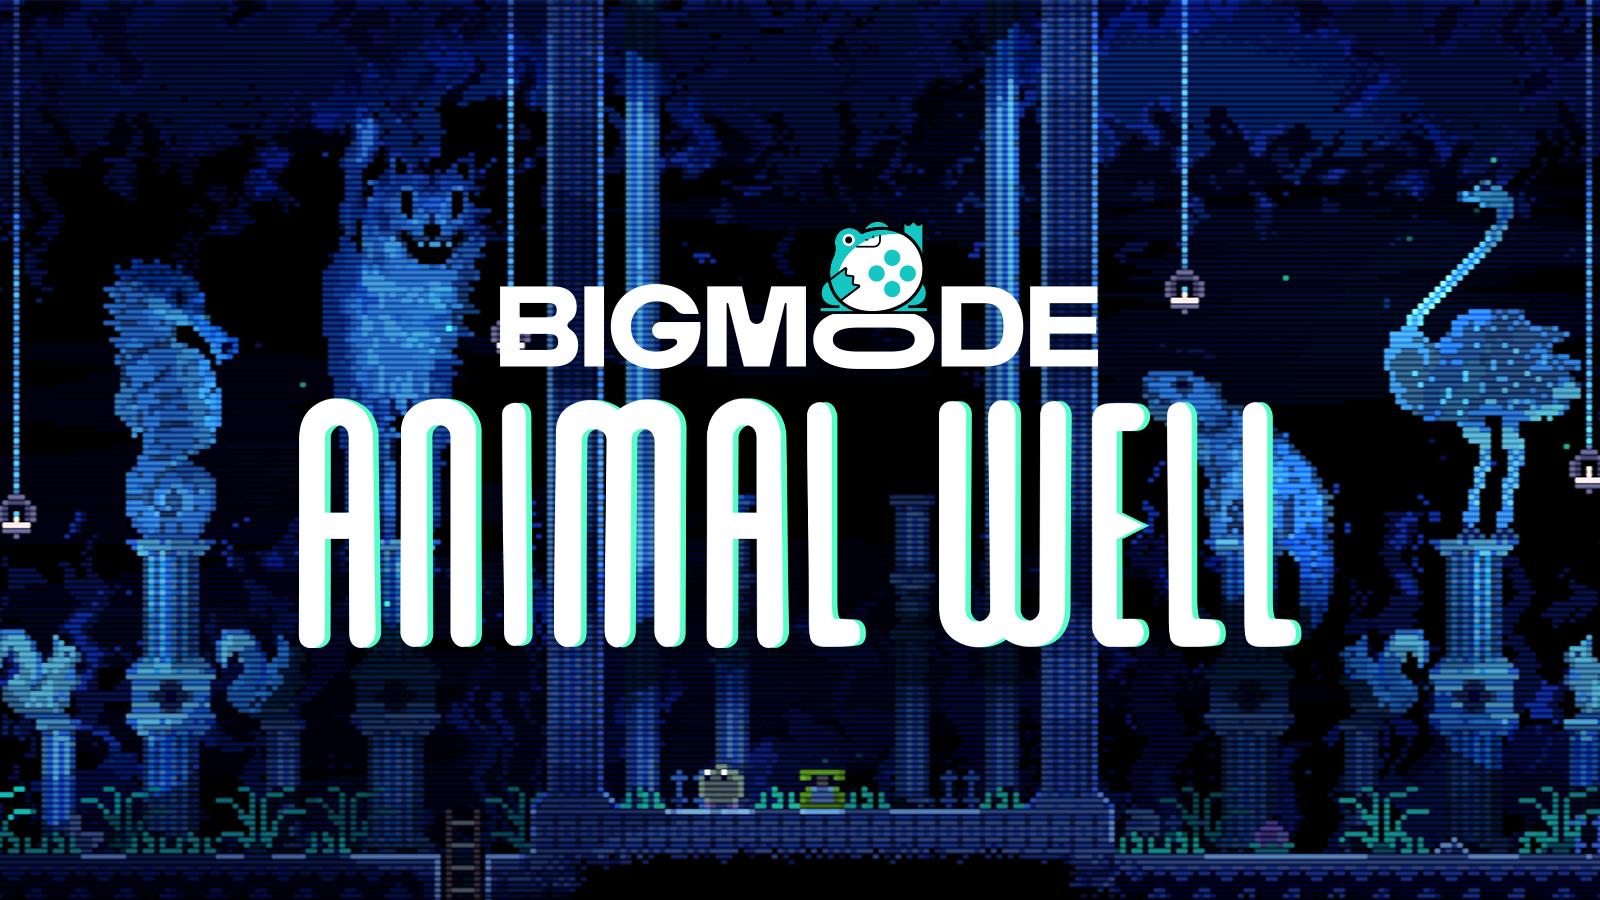 animal well big mode